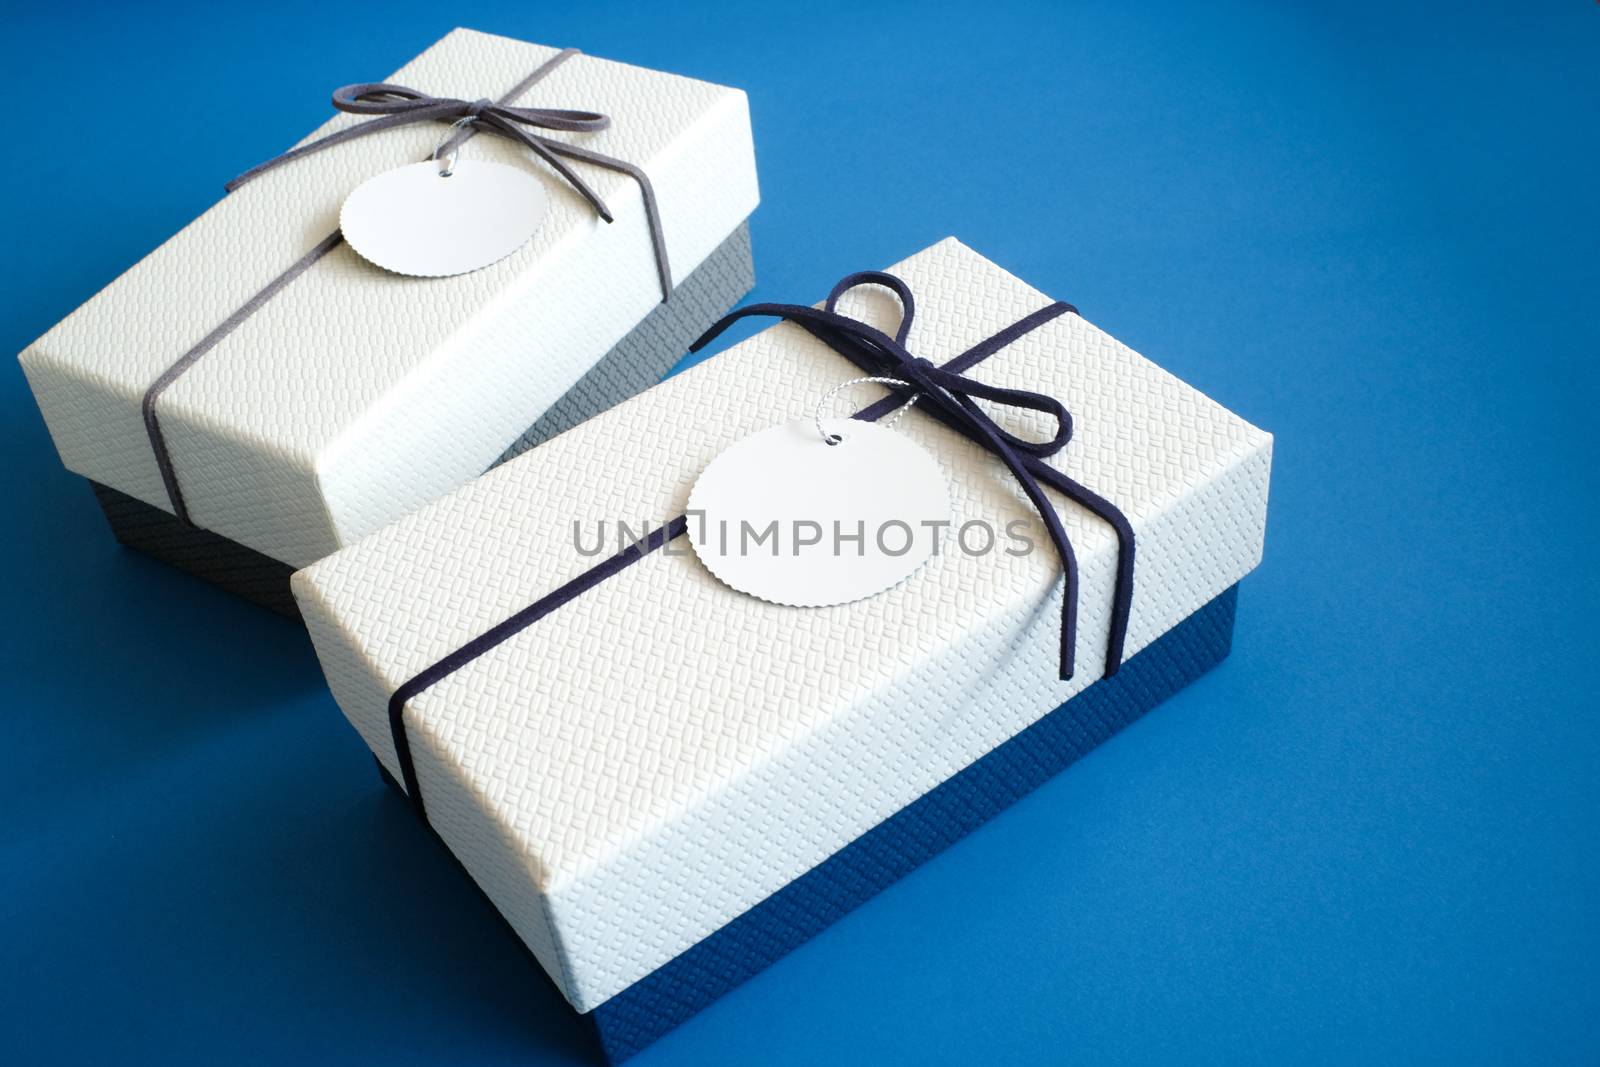 Present Gift box and ribbon